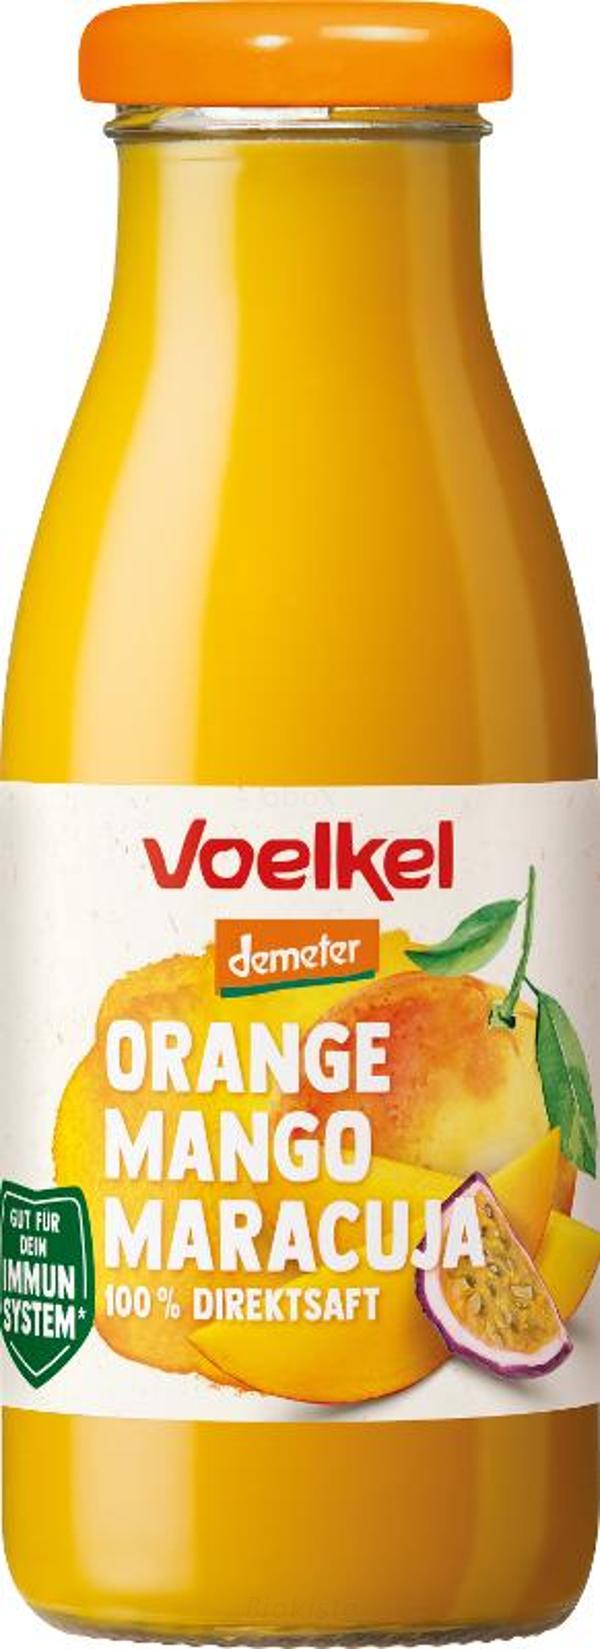 Produktfoto zu fair to go Orange Mango Maracu